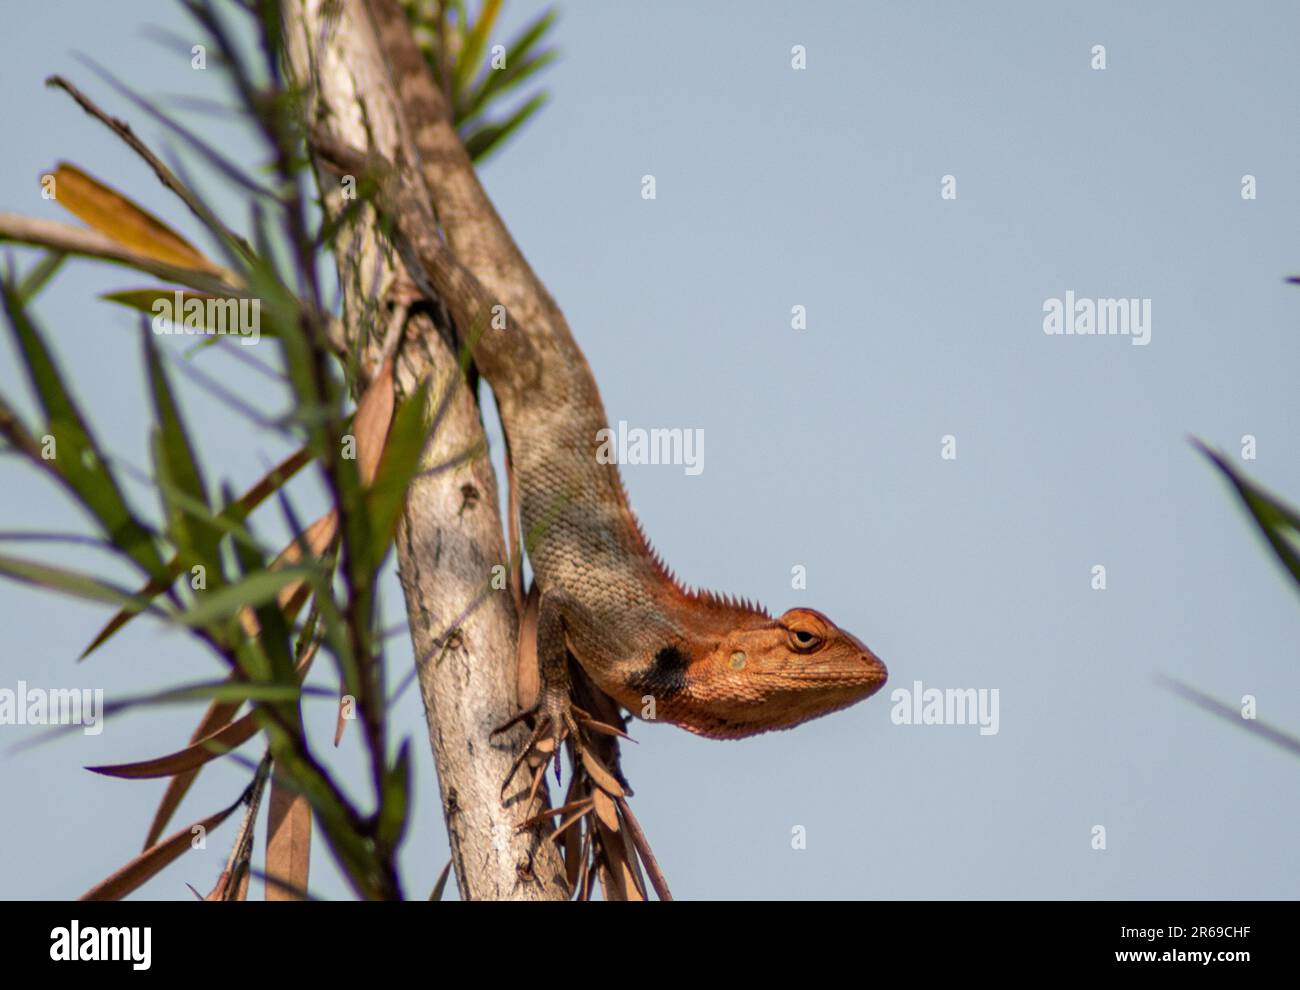 Il camaleonte indiano è un rettile altamente adattabile noto per la sua capacità di cambiare i colori e la sua caratteristica coda arricciata. Foto Stock